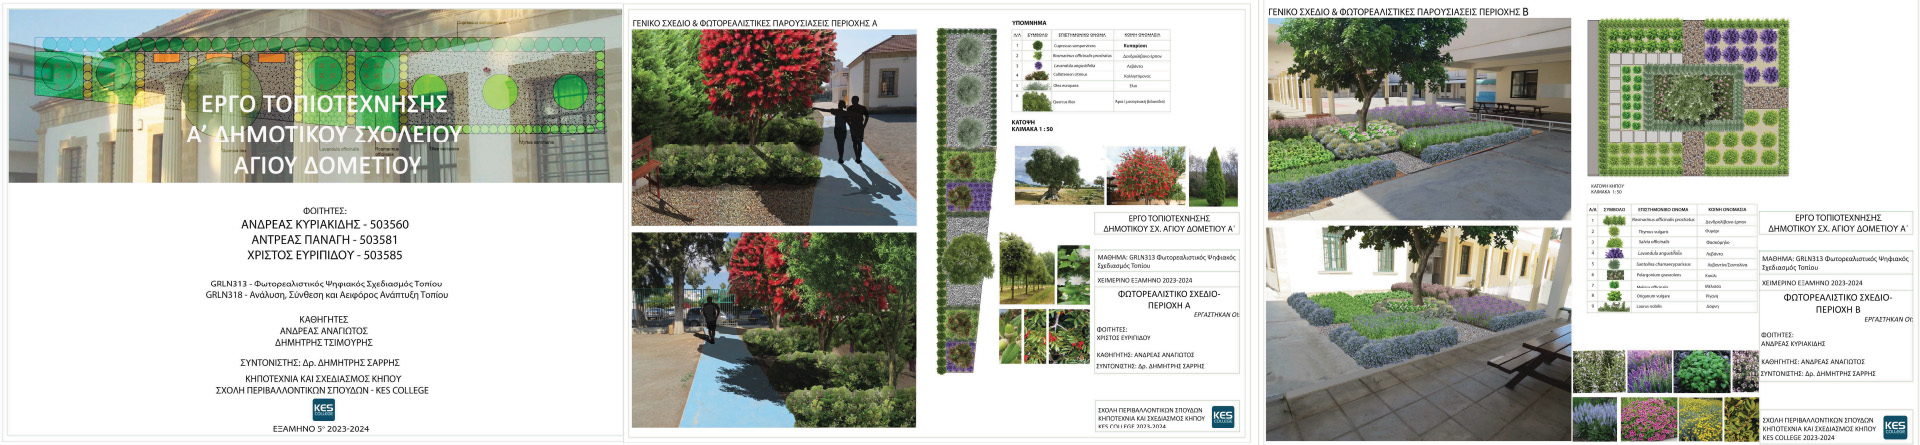 Έργο Τοπιοτέχνησης Α’ Δημοτικού Σχολείου Αγίου Δομετίου από τους φοιτητές των προγραμμάτων σπουδών  «Κηποτεχνία & Σχεδιασμός Κήπου» του KES COLLEGE